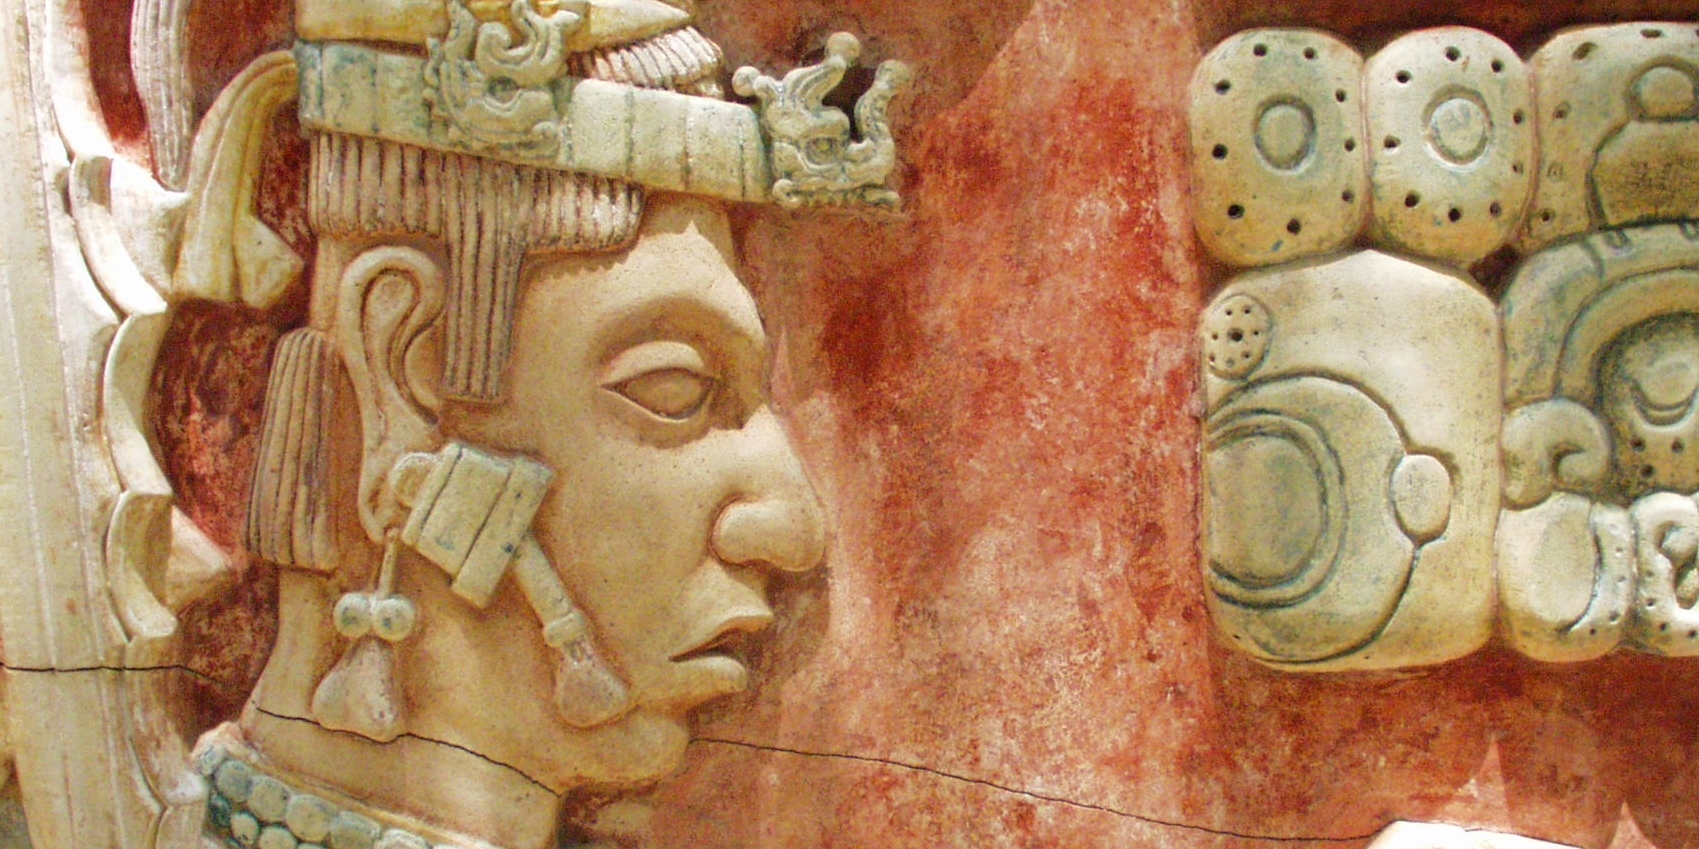 Йому близько 2200 років. Це найстаріший знайдений календар майя?